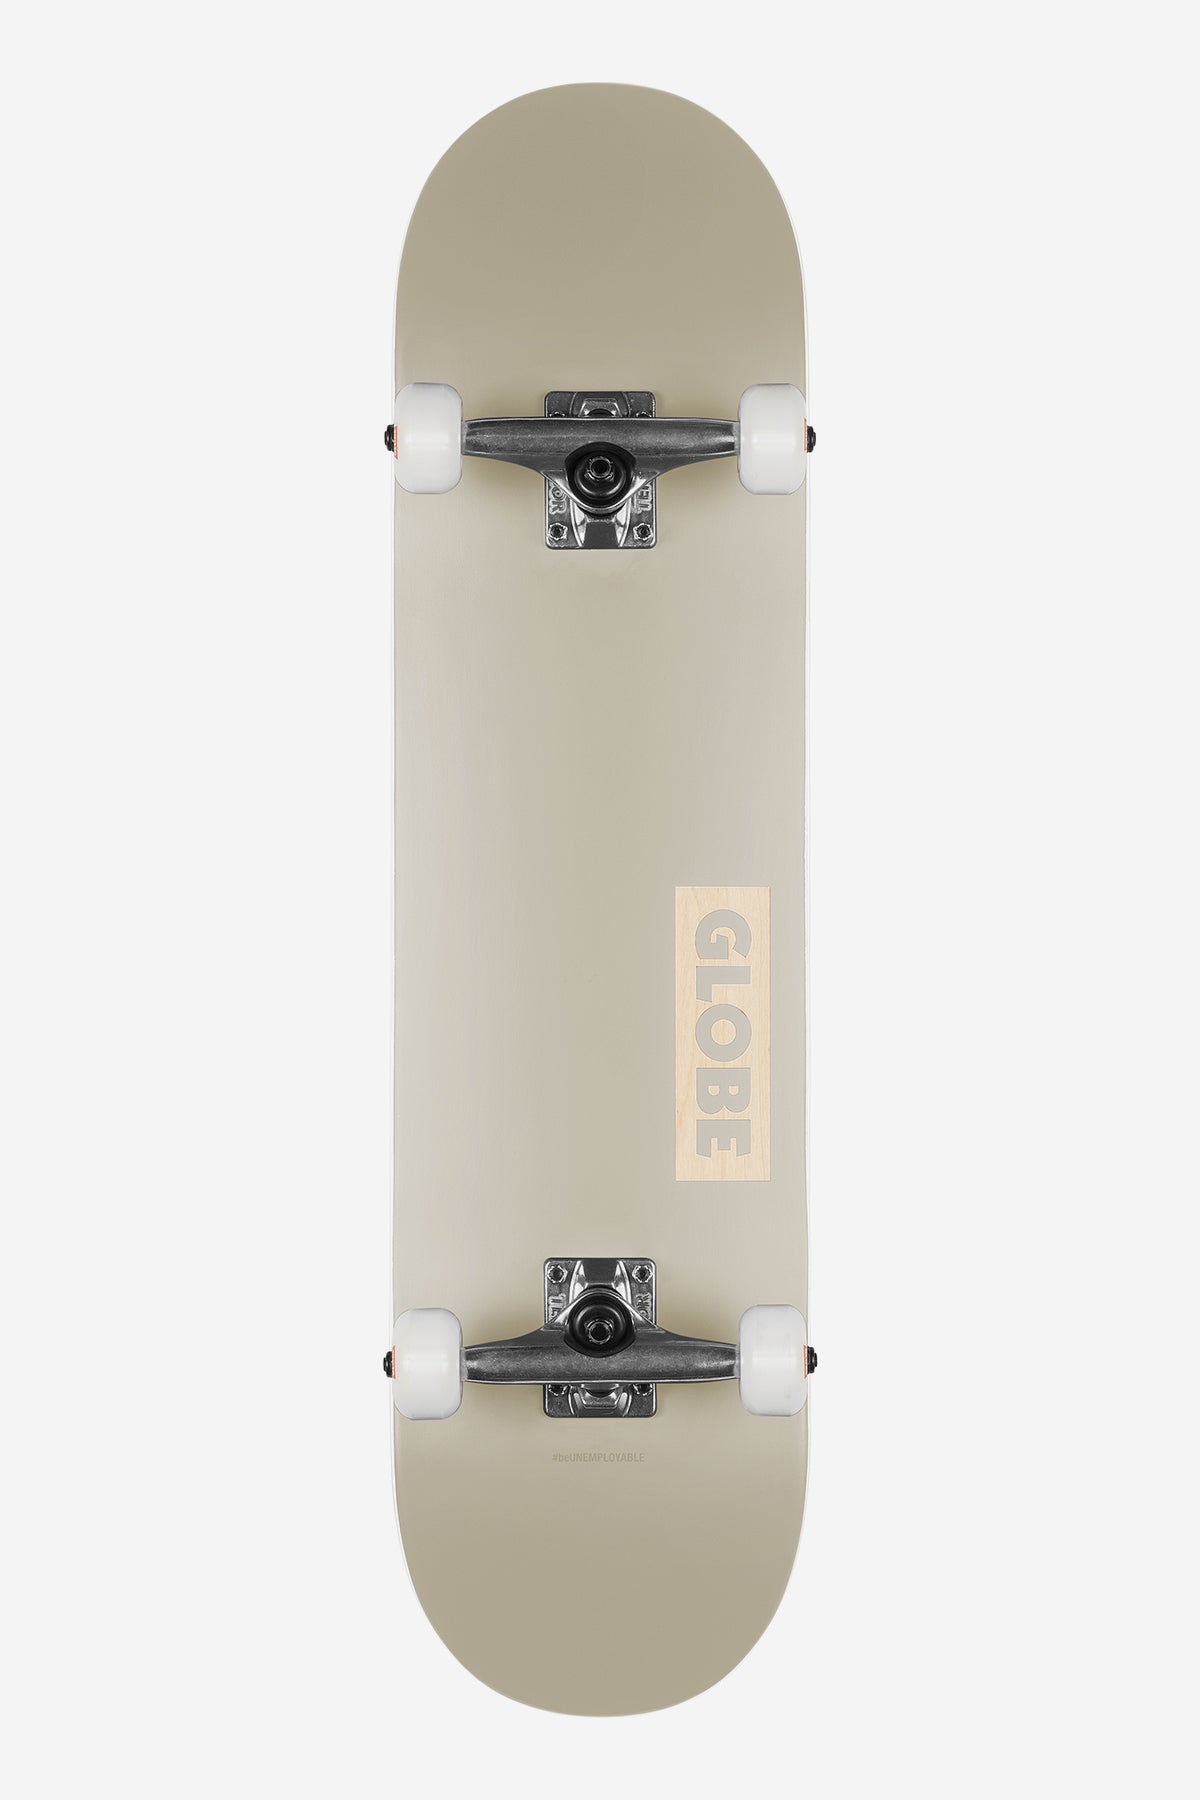 Goodstock - Off White - 8.0" Complete Skateboard